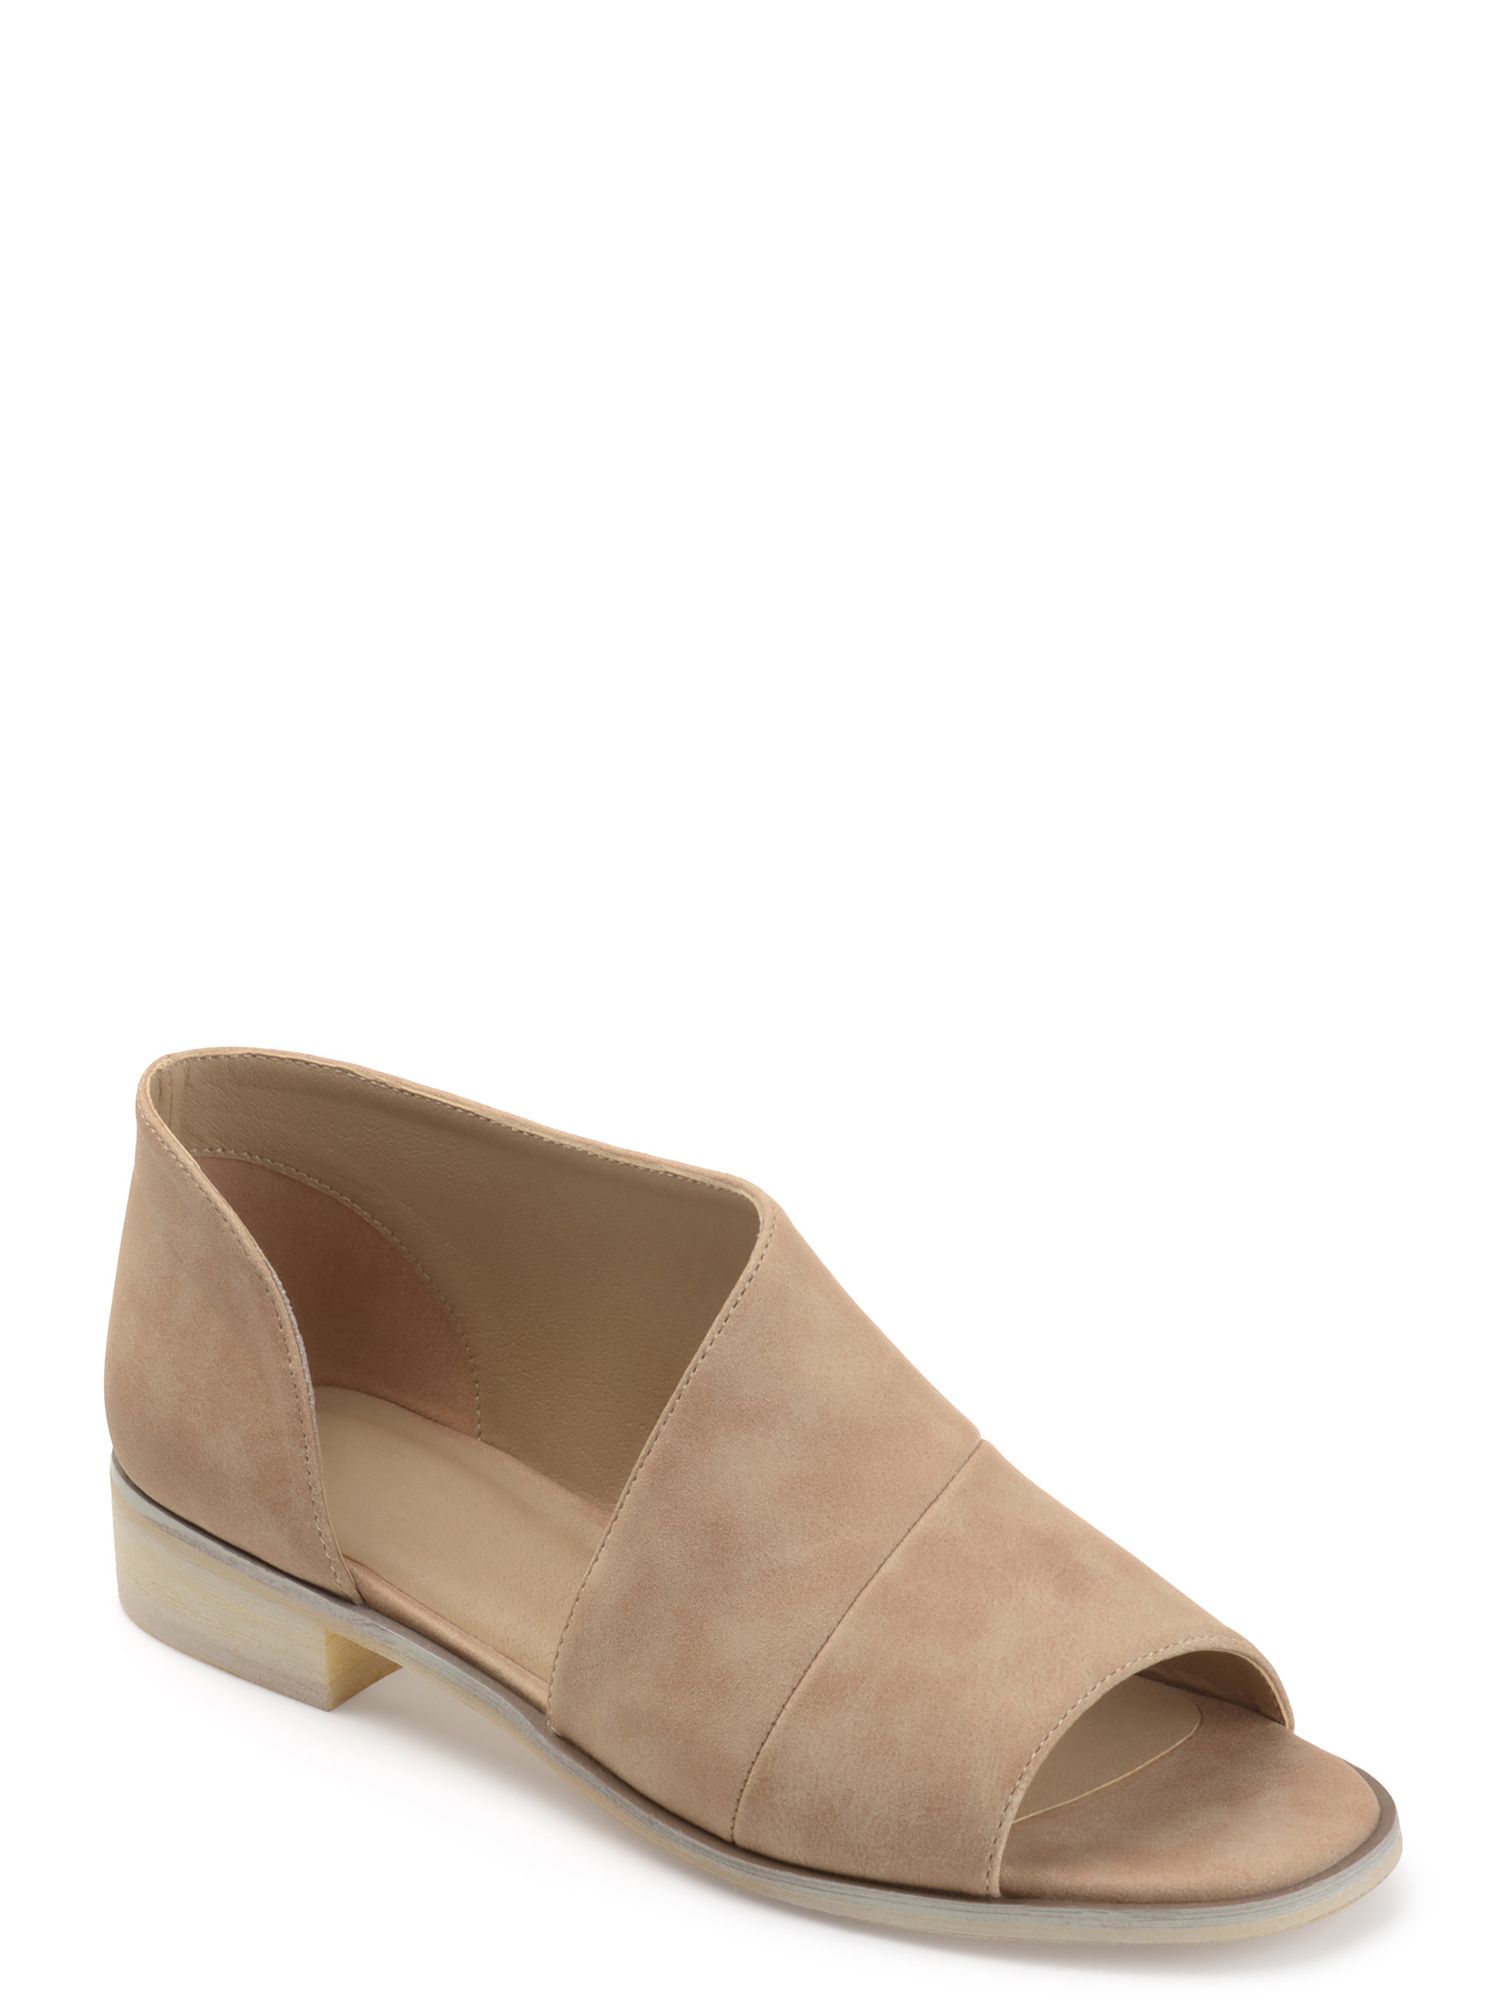 Women’s Faux Leather D’orsay Asymmetrical Open-toe Flats -$19.99(43% Off)